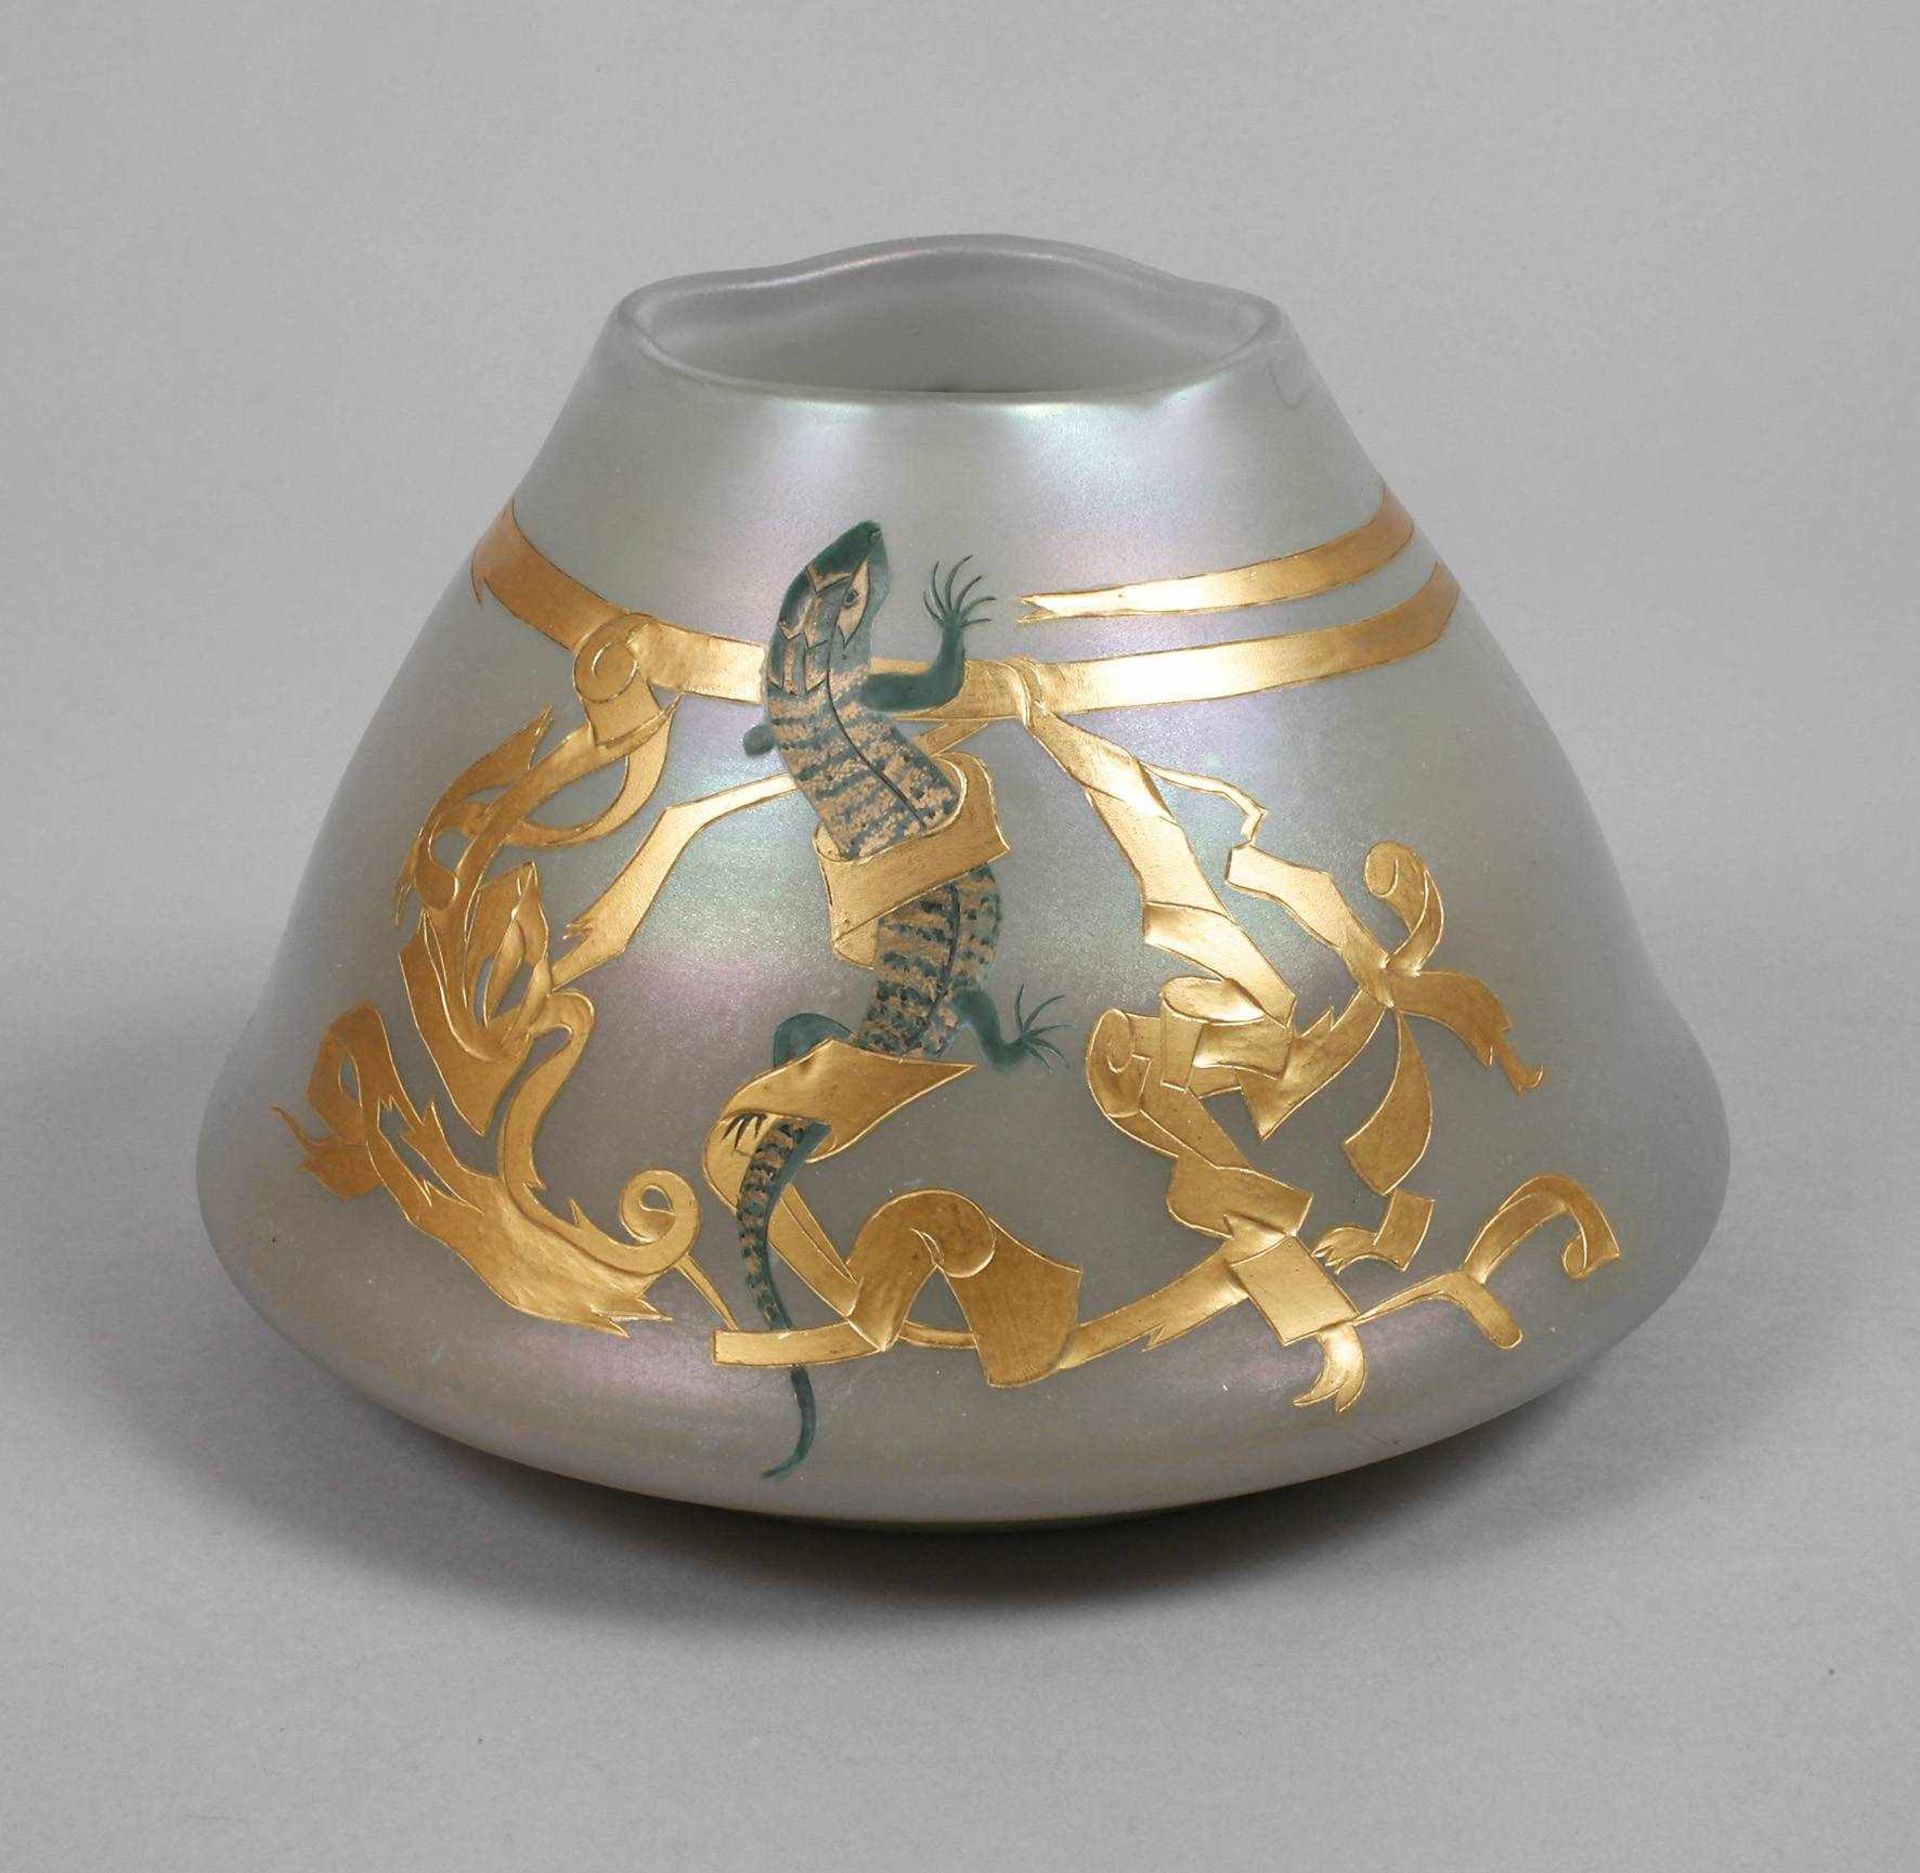 Seltene Vase Ferdinand von PoschingerEntwurf Julius Dietz für die Weltausstellung Paris 1900,